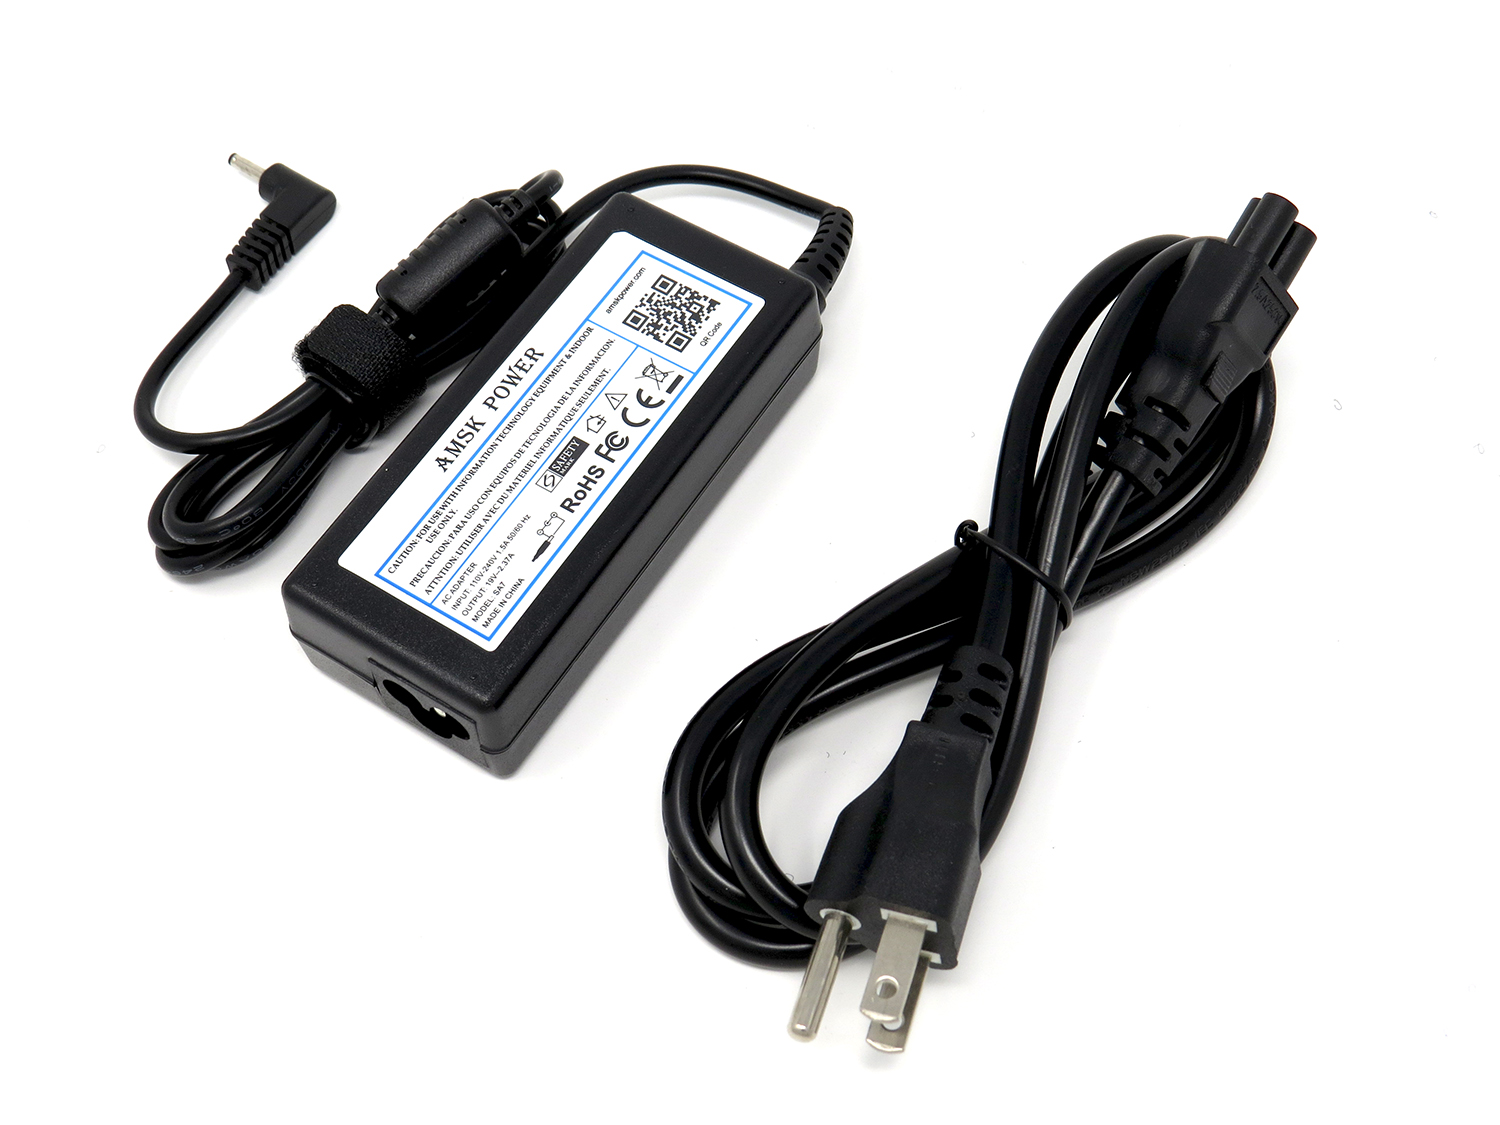 AMSK POWER AC Adapter for LG Gram 13.3" 14" 15" Series 13Z950 13Z970 13Z940 13Z975 14Z950 14Z970 15Z960 15Z970 15Z975 Laptop - image 1 of 3